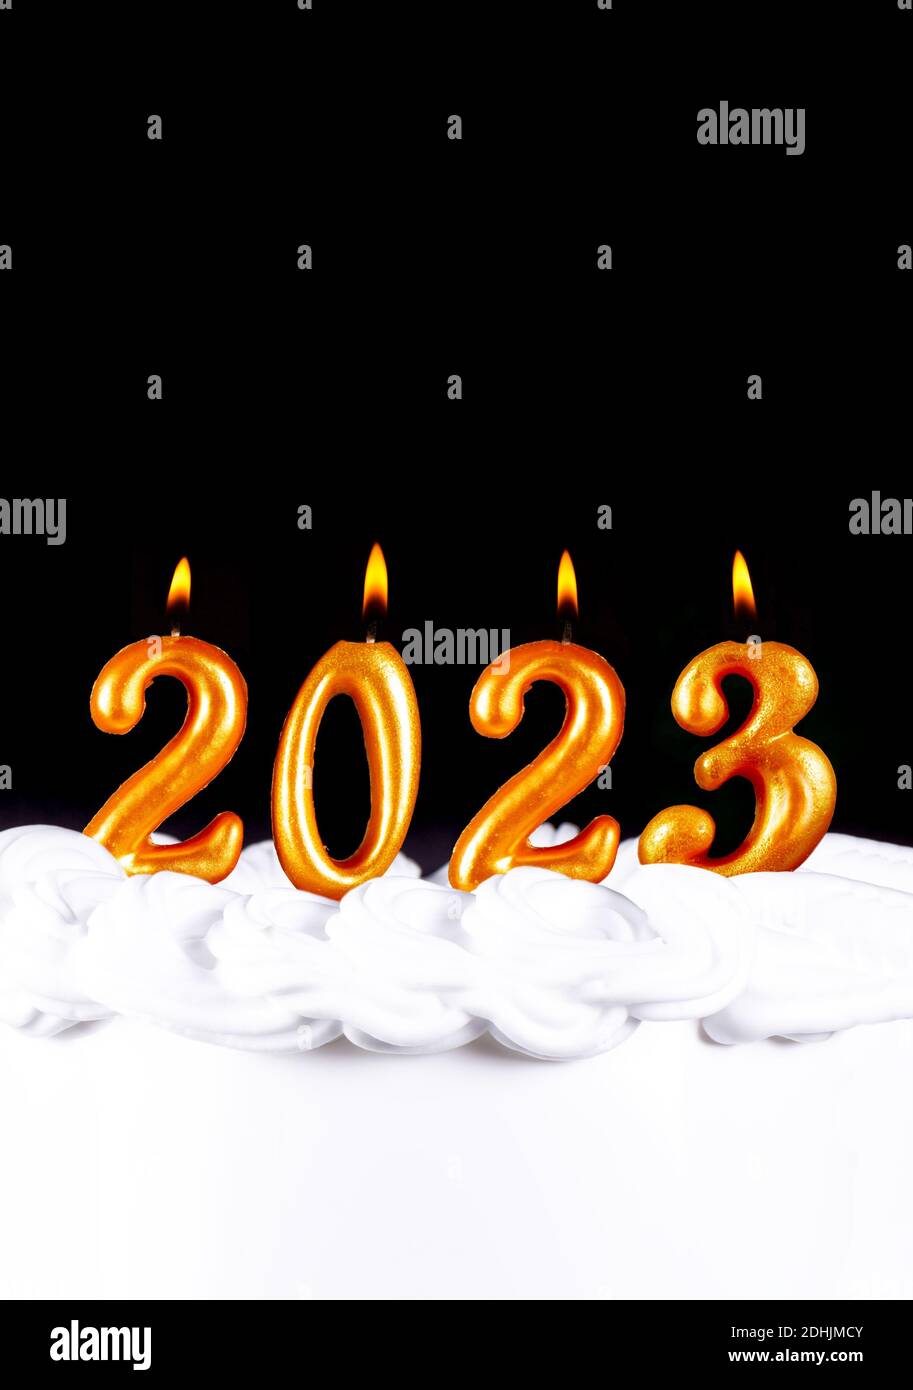 Hãy khẳng định sự sang trọng và lịch lãm của năm mới 2024 với bốn nến vàng viết số. Sự đơn giản và tinh tế của thiết kế sẽ đem lại cho bạn những trải nghiệm độc đáo và tuyệt vời. Hãy cùng chứng kiến và chào đón một năm mới đầy ý nghĩa và may mắn cùng bức ảnh này nhé!